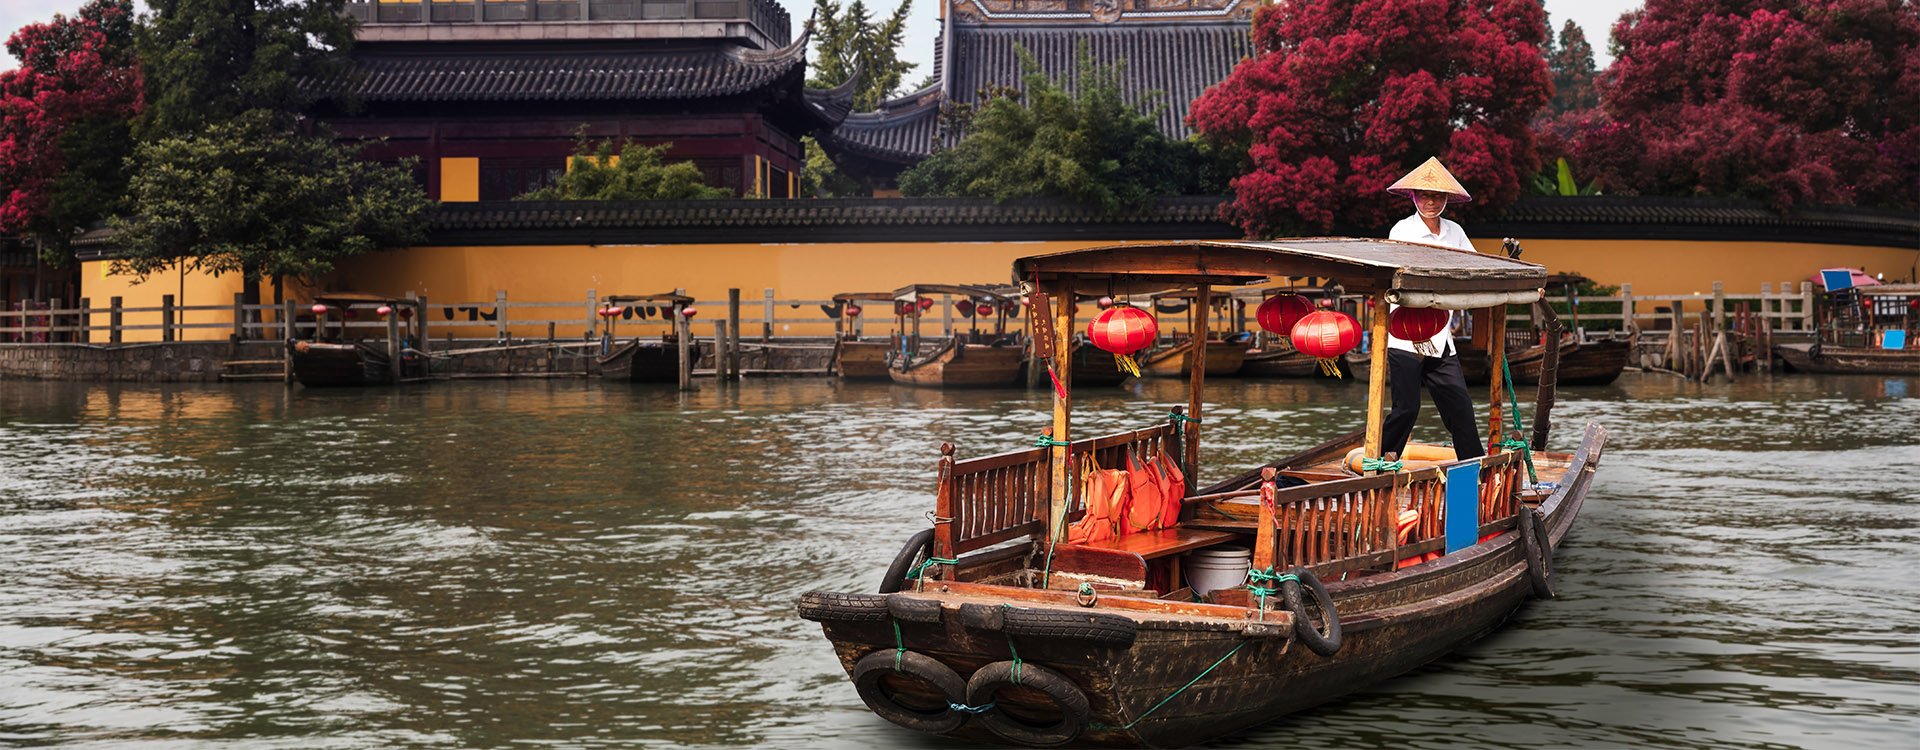 China, Shanghai, Zhujiajiao town, water boats, cruise through historic buildings